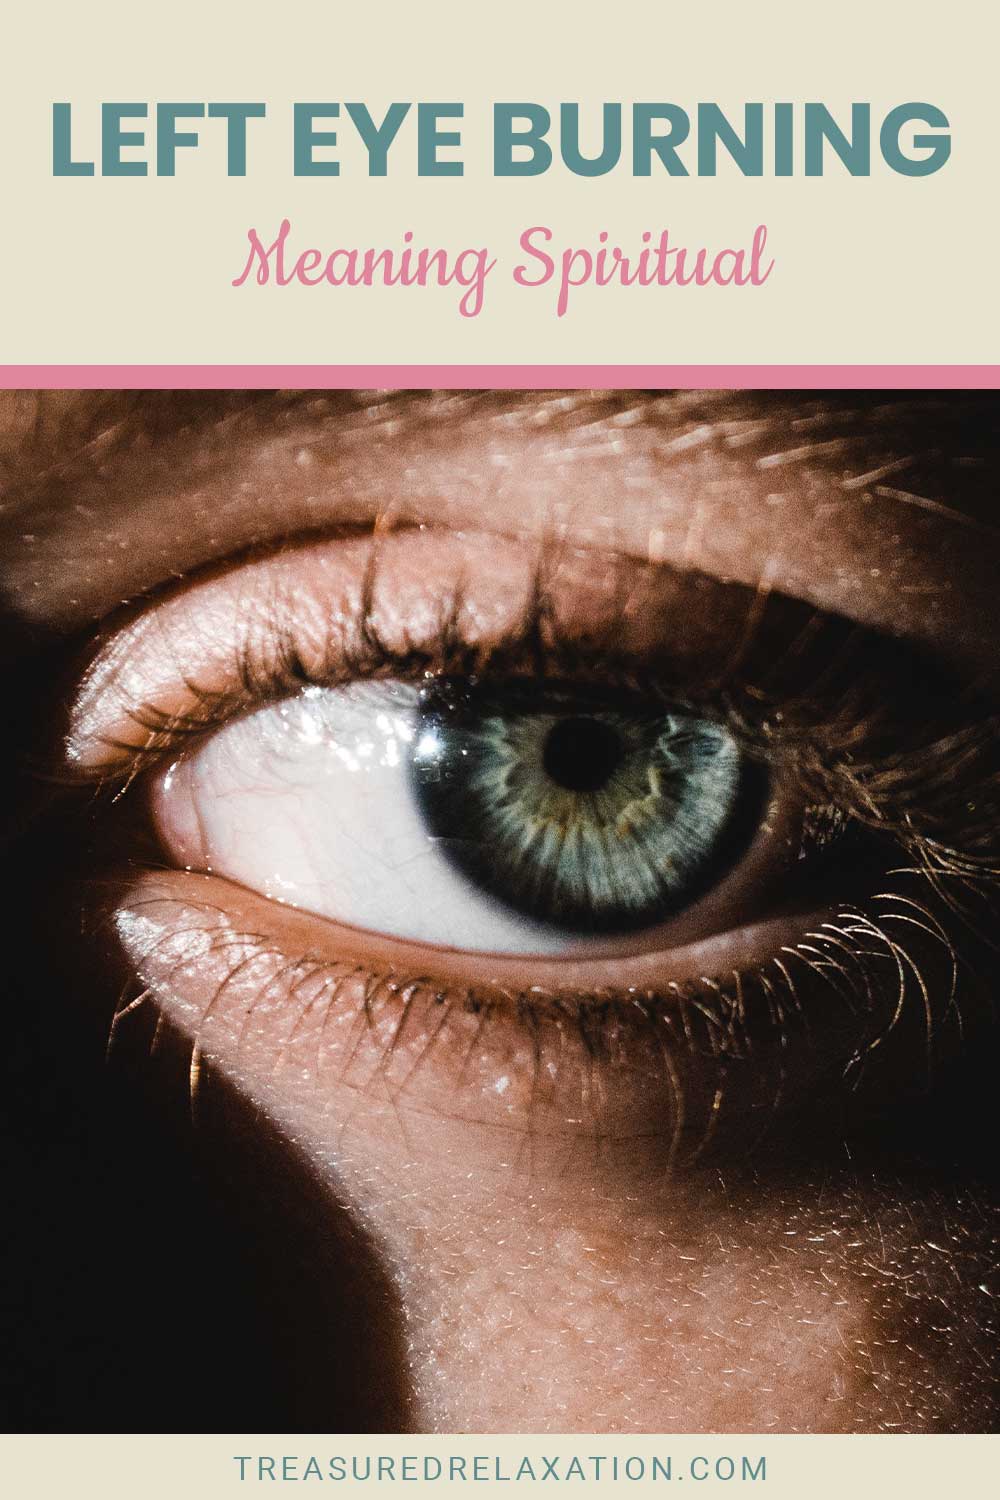 Left Eye Burning Meaning Spiritual